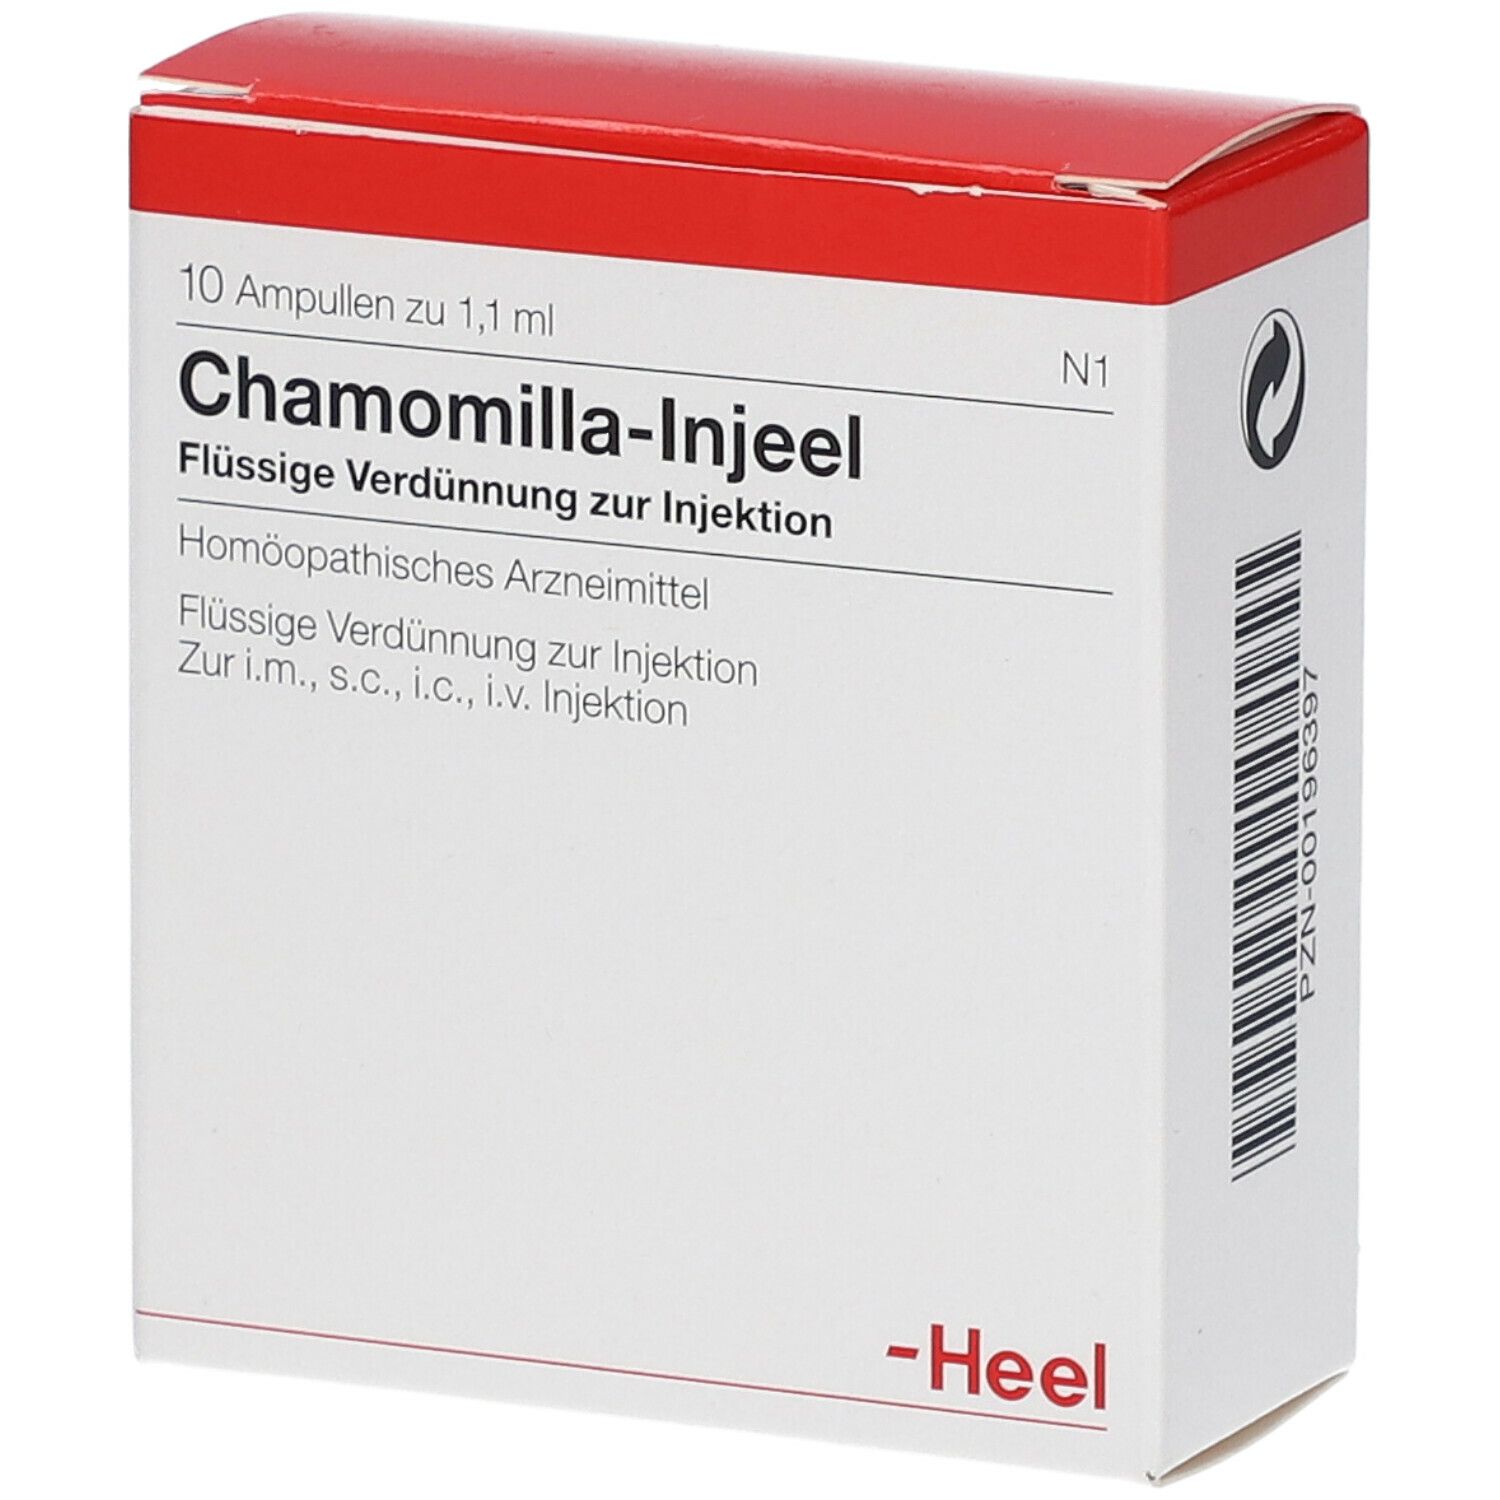 Chamomilla-Injeel® Ampullen